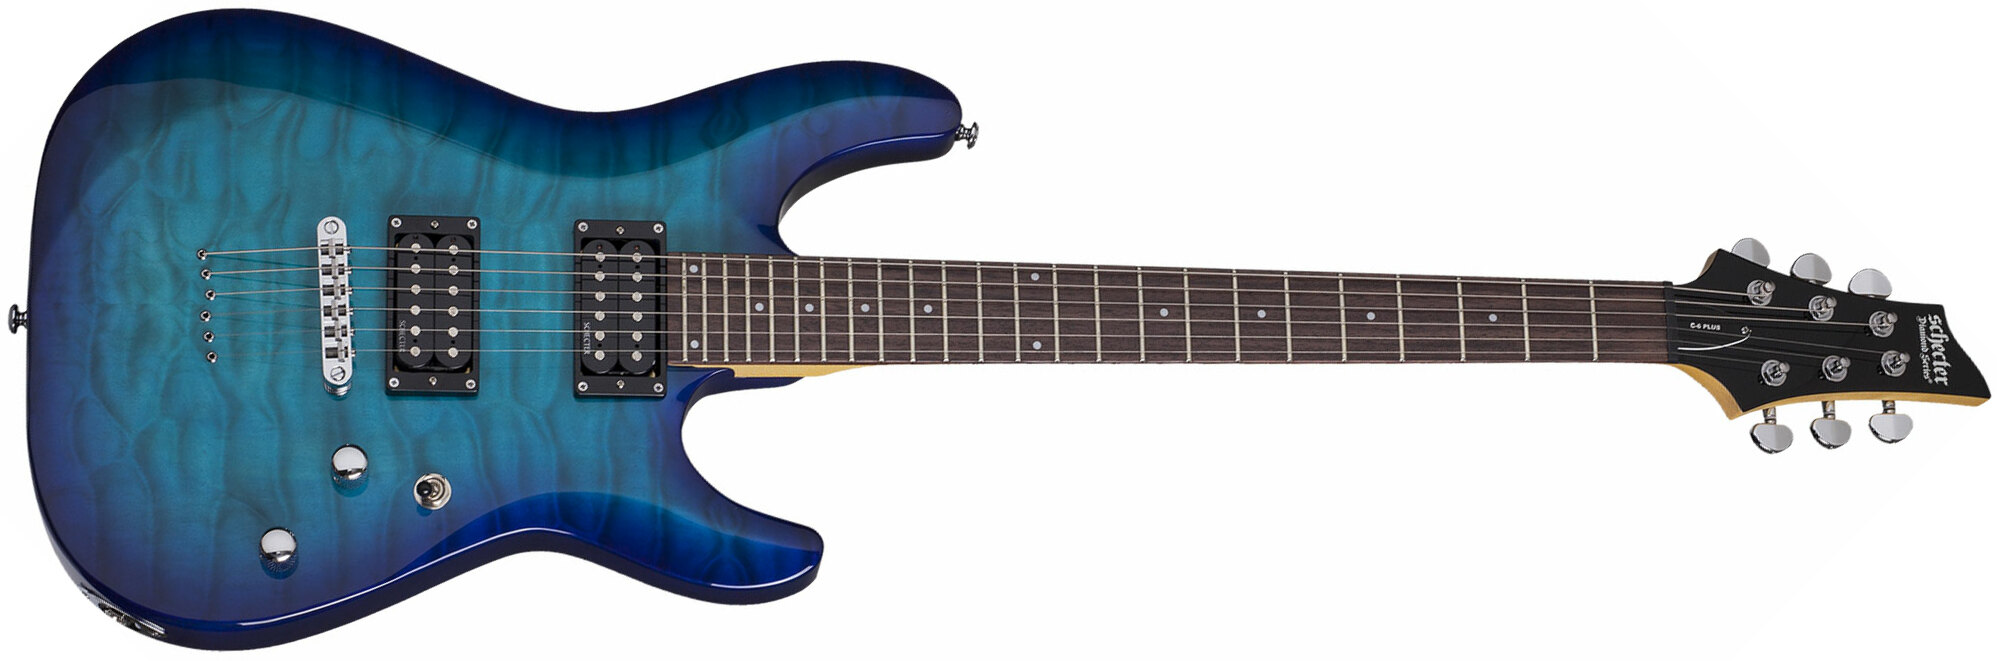 Schecter C-6 Plus 2h Ht Rw - Ocean Blue Burst - Double cut electric guitar - Main picture